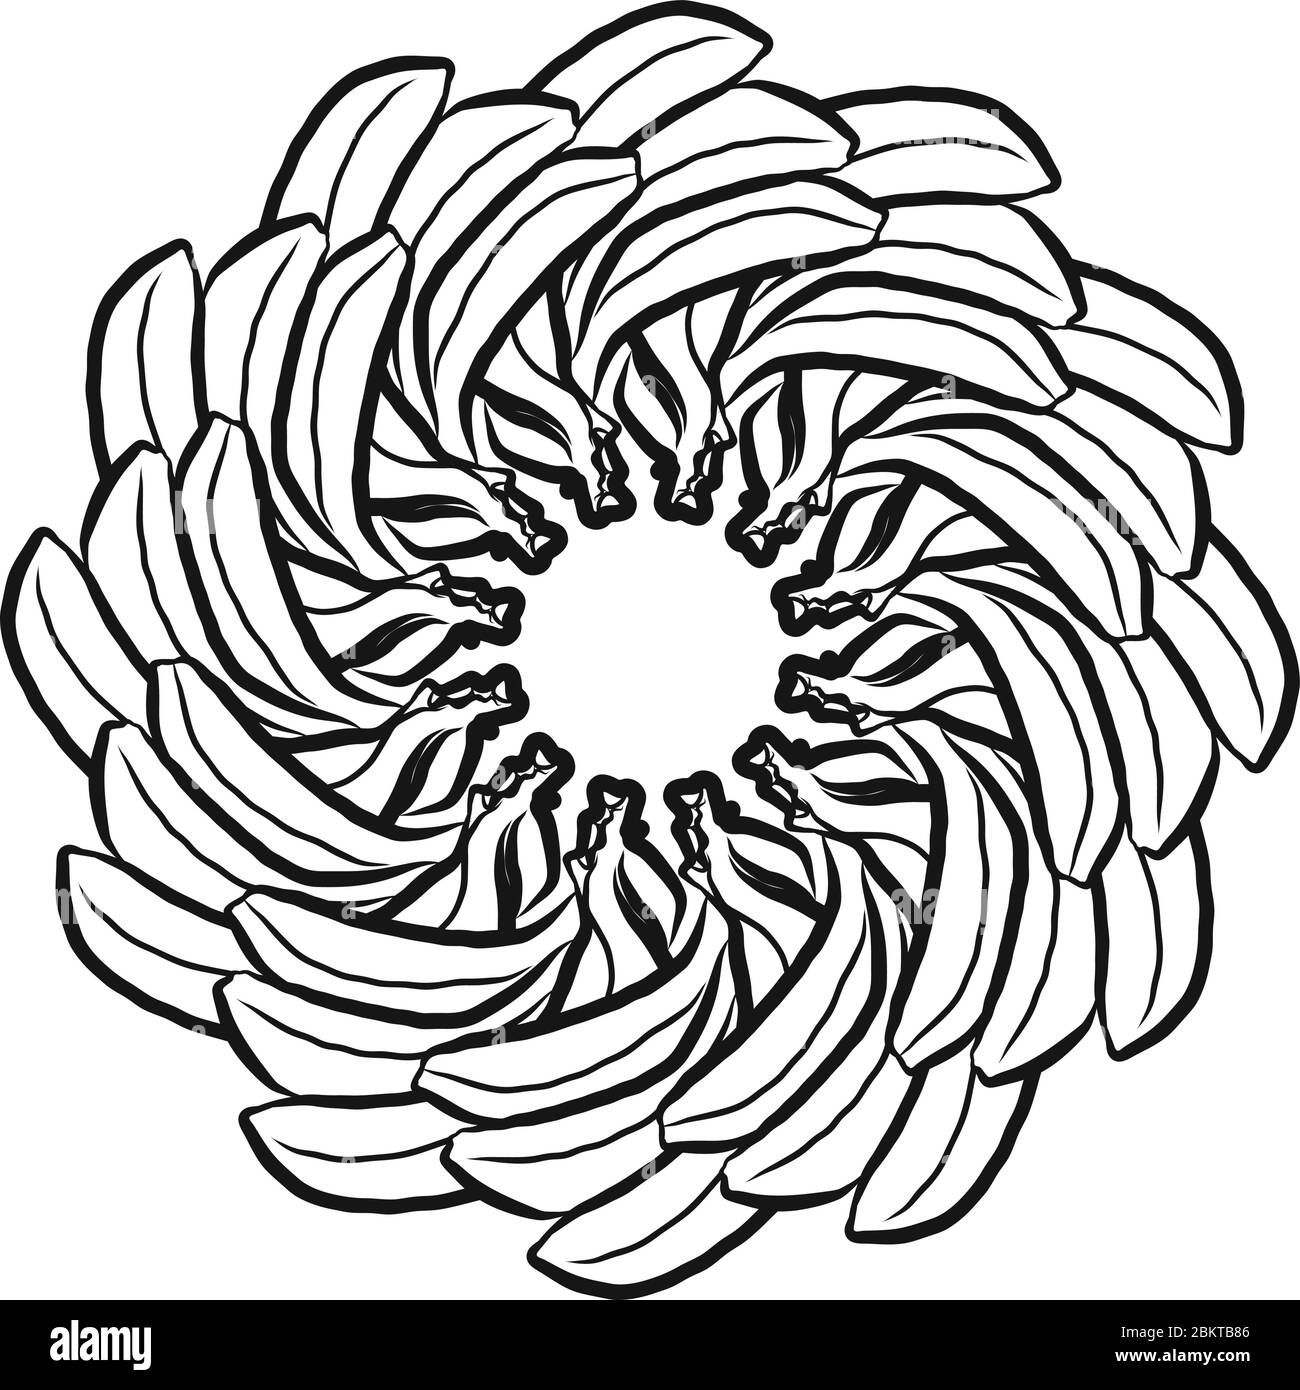 Umriss Version von Bananen in einem Kreis angeordnet. Nahtlose runde Komposition mit handgezogenen Früchten. Vektorgrafik auf Weiß Stock Vektor